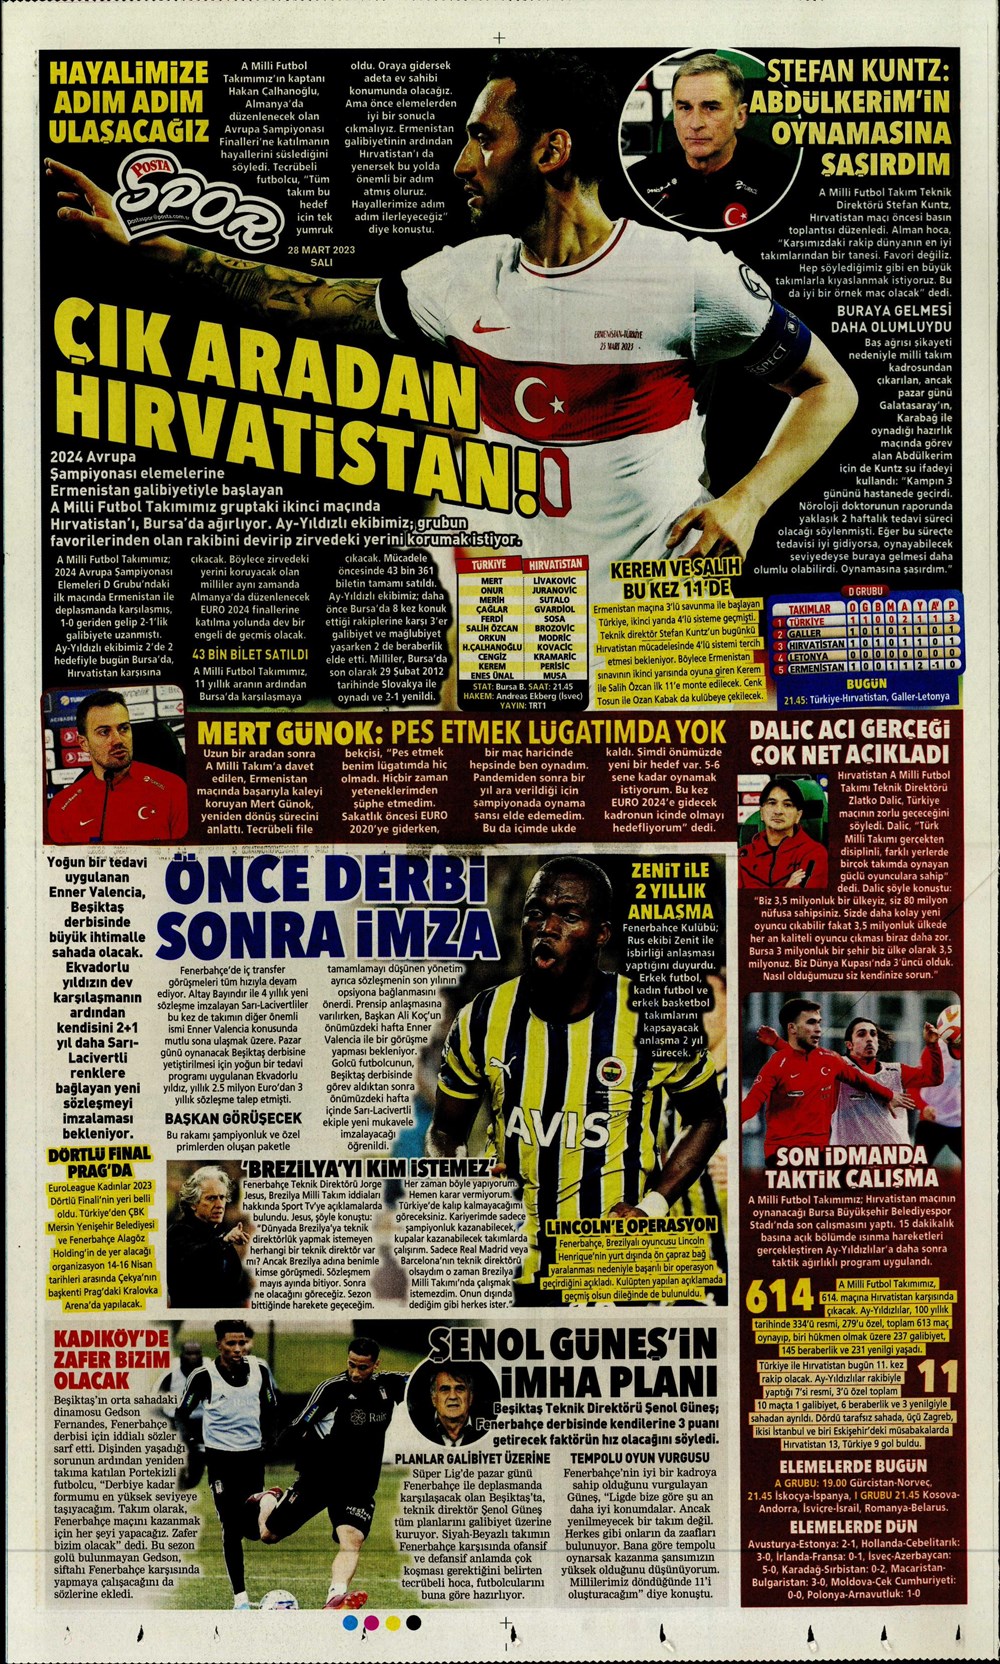 "Vurduğumuz gol olsun" - Sporun manşetleri - 23. Foto